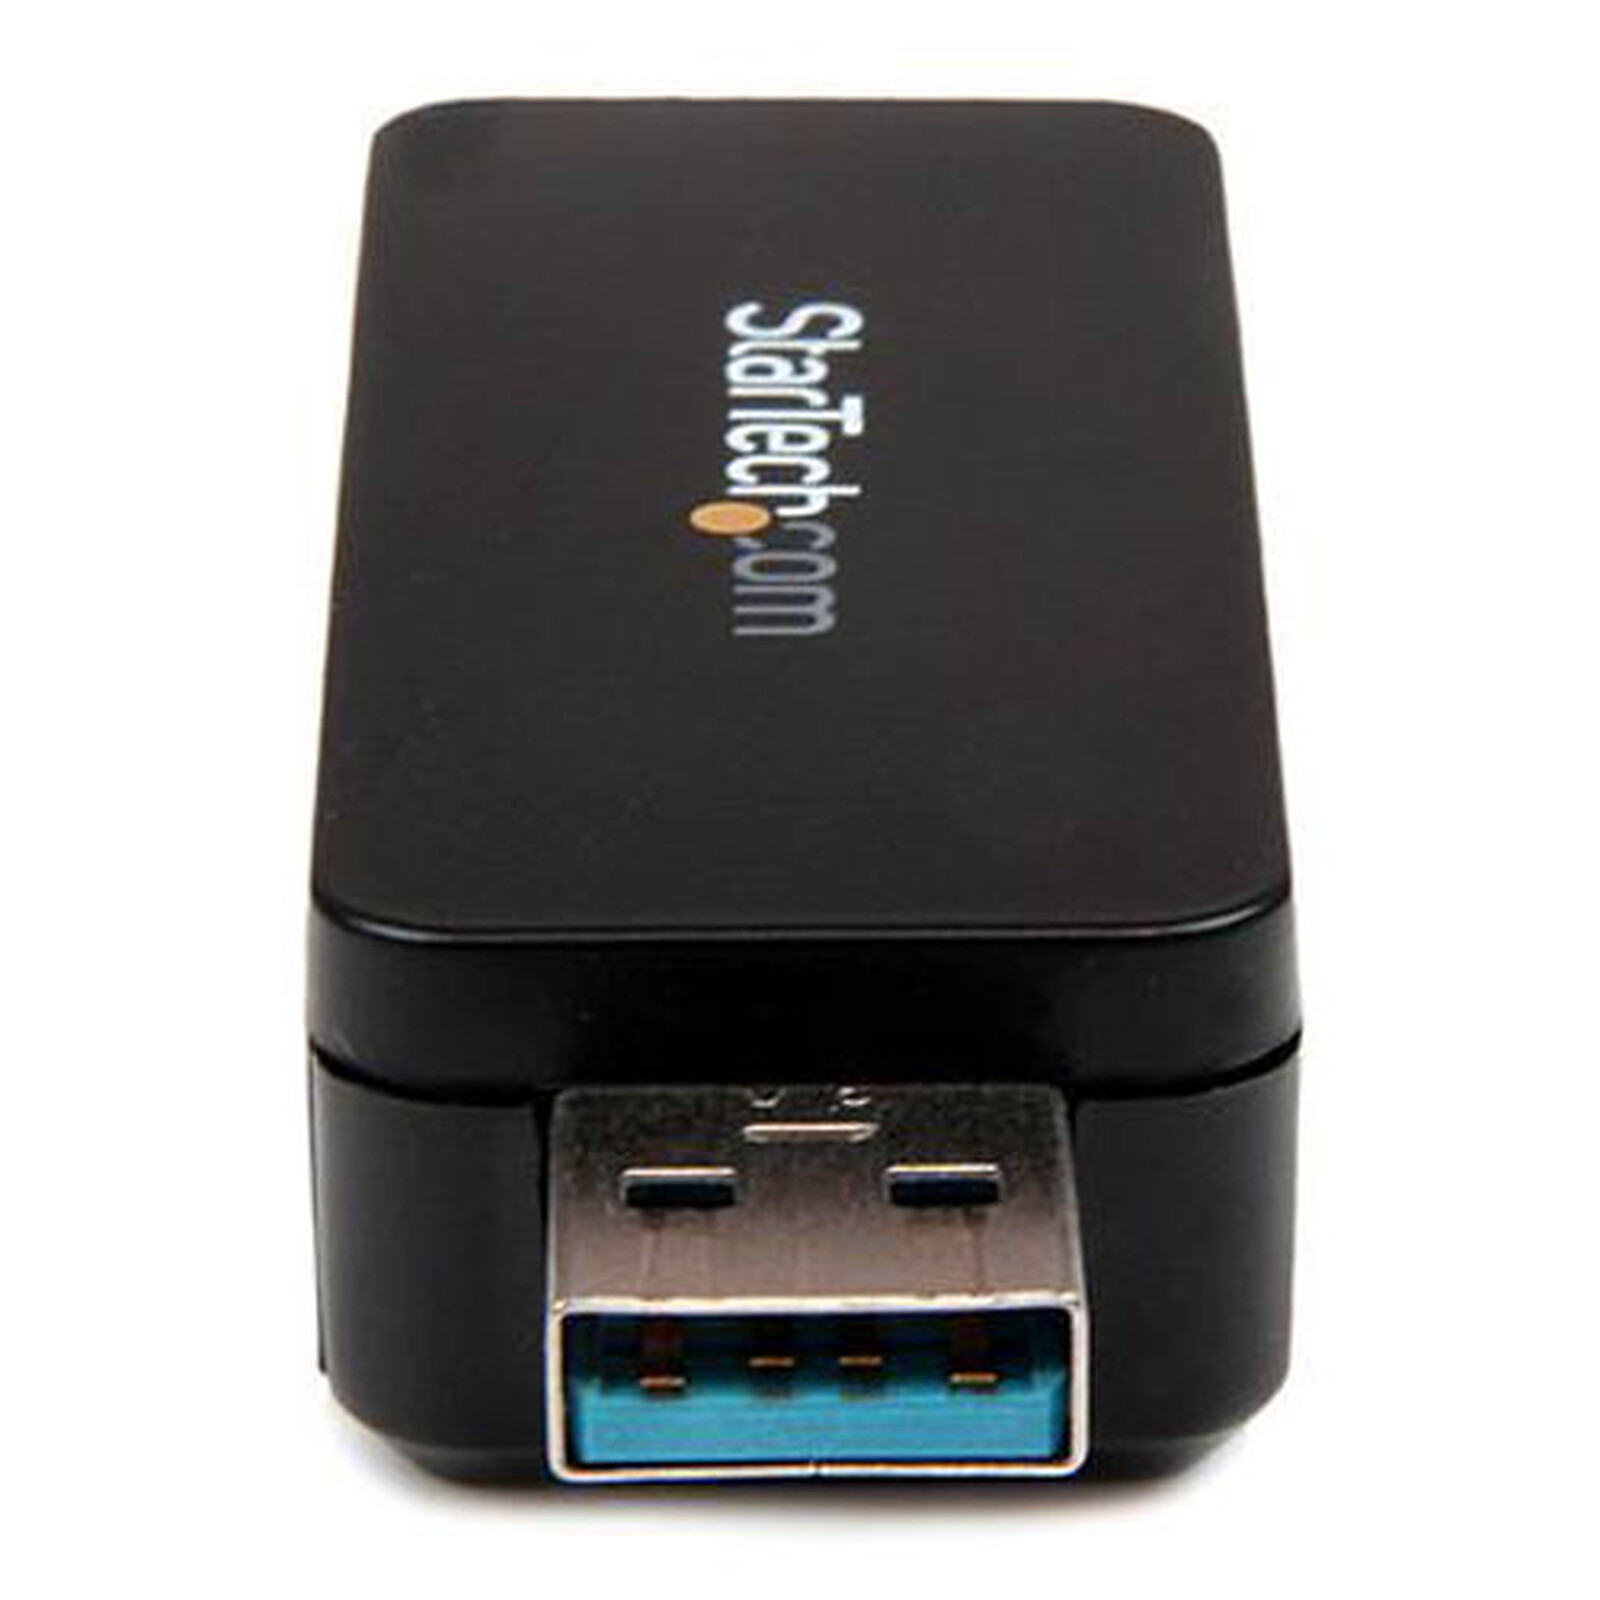 Clé USB Porte Clé Lecteur Carte Micro SD Destockage Grossiste